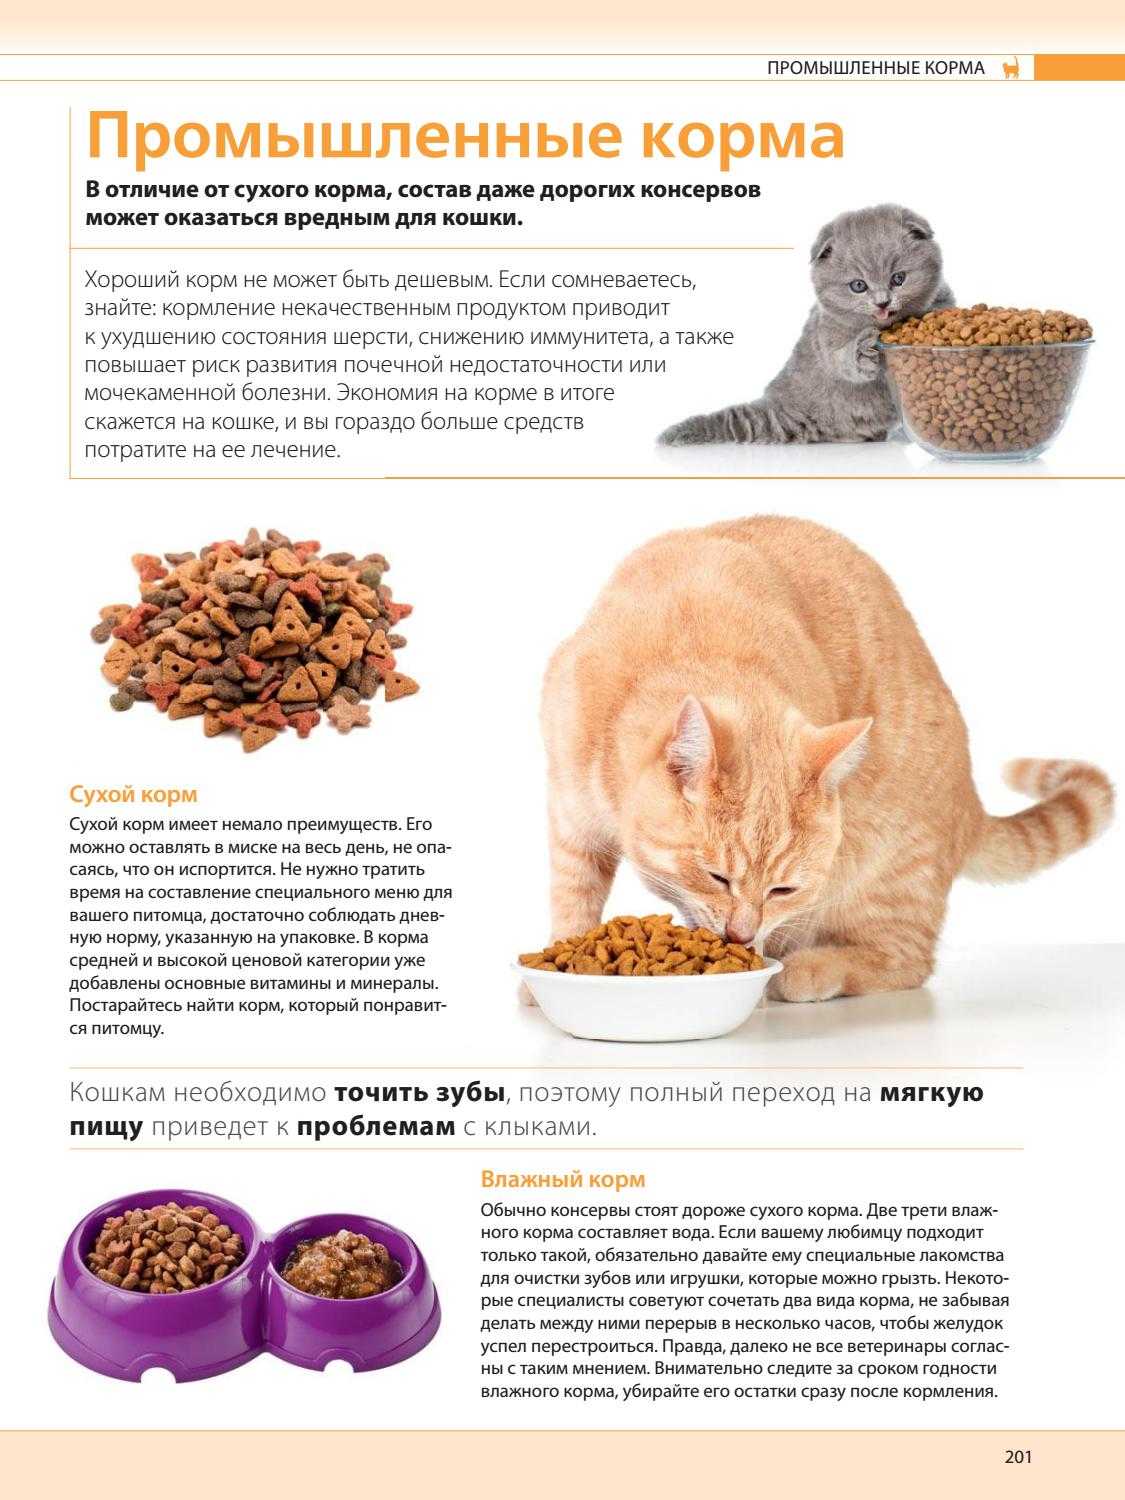 Заболевания печени у кошек: причины, признаки и симптомы